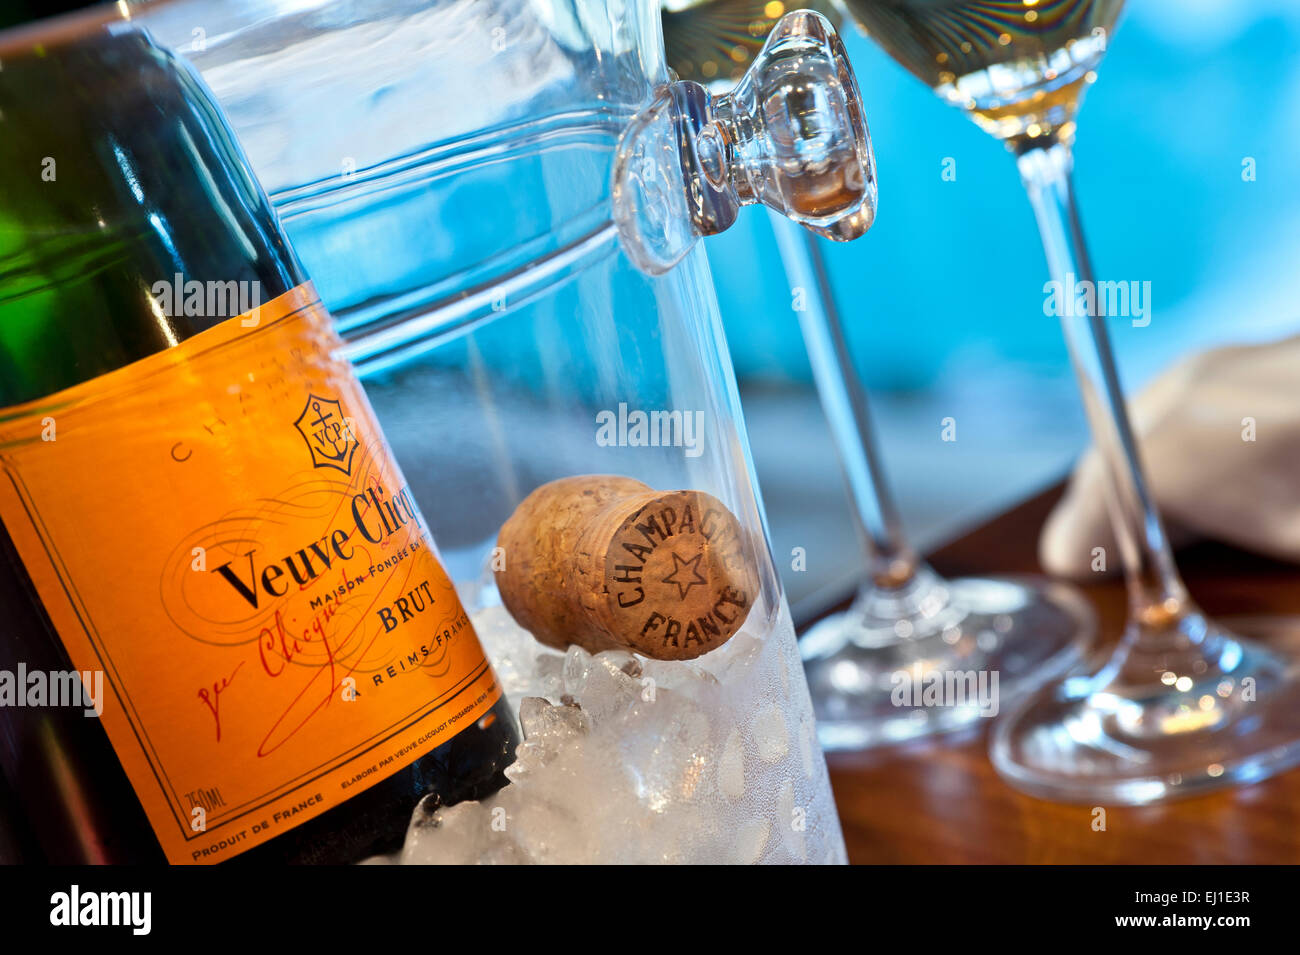 Fermer la vue sur Fine Champagne Veuve Clicquot bouteille sur la glace avec du liège et les verres, piscine de luxe en arrière-plan Banque D'Images